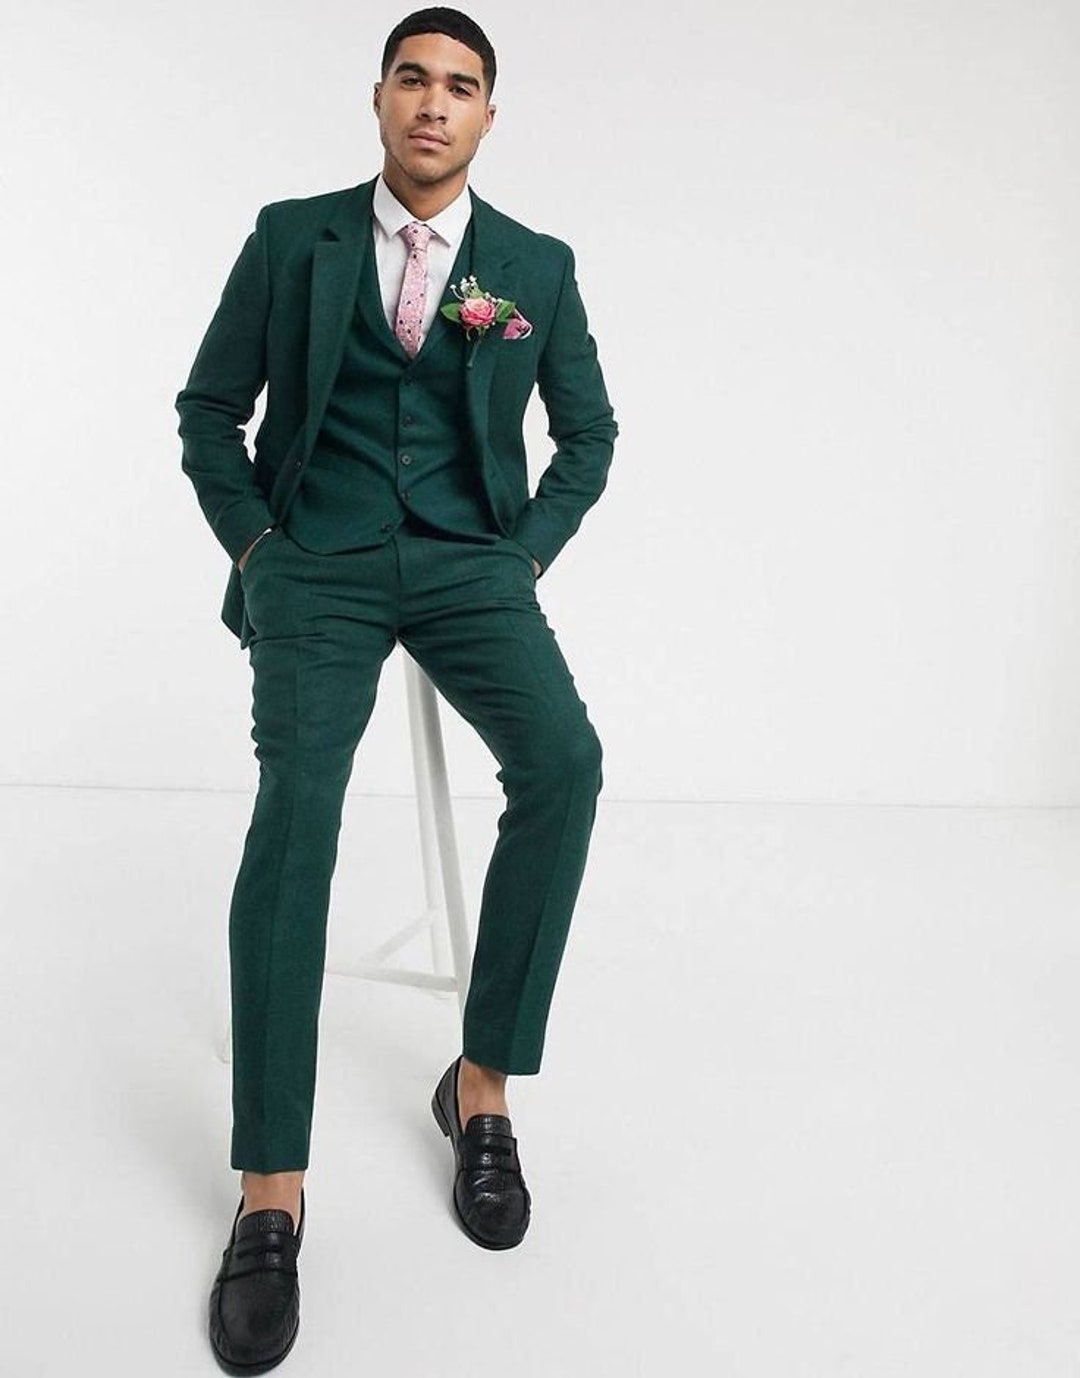 Men Suit Dark Green Wedding Suit Groom Wear Suit Piece Suit - Etsy